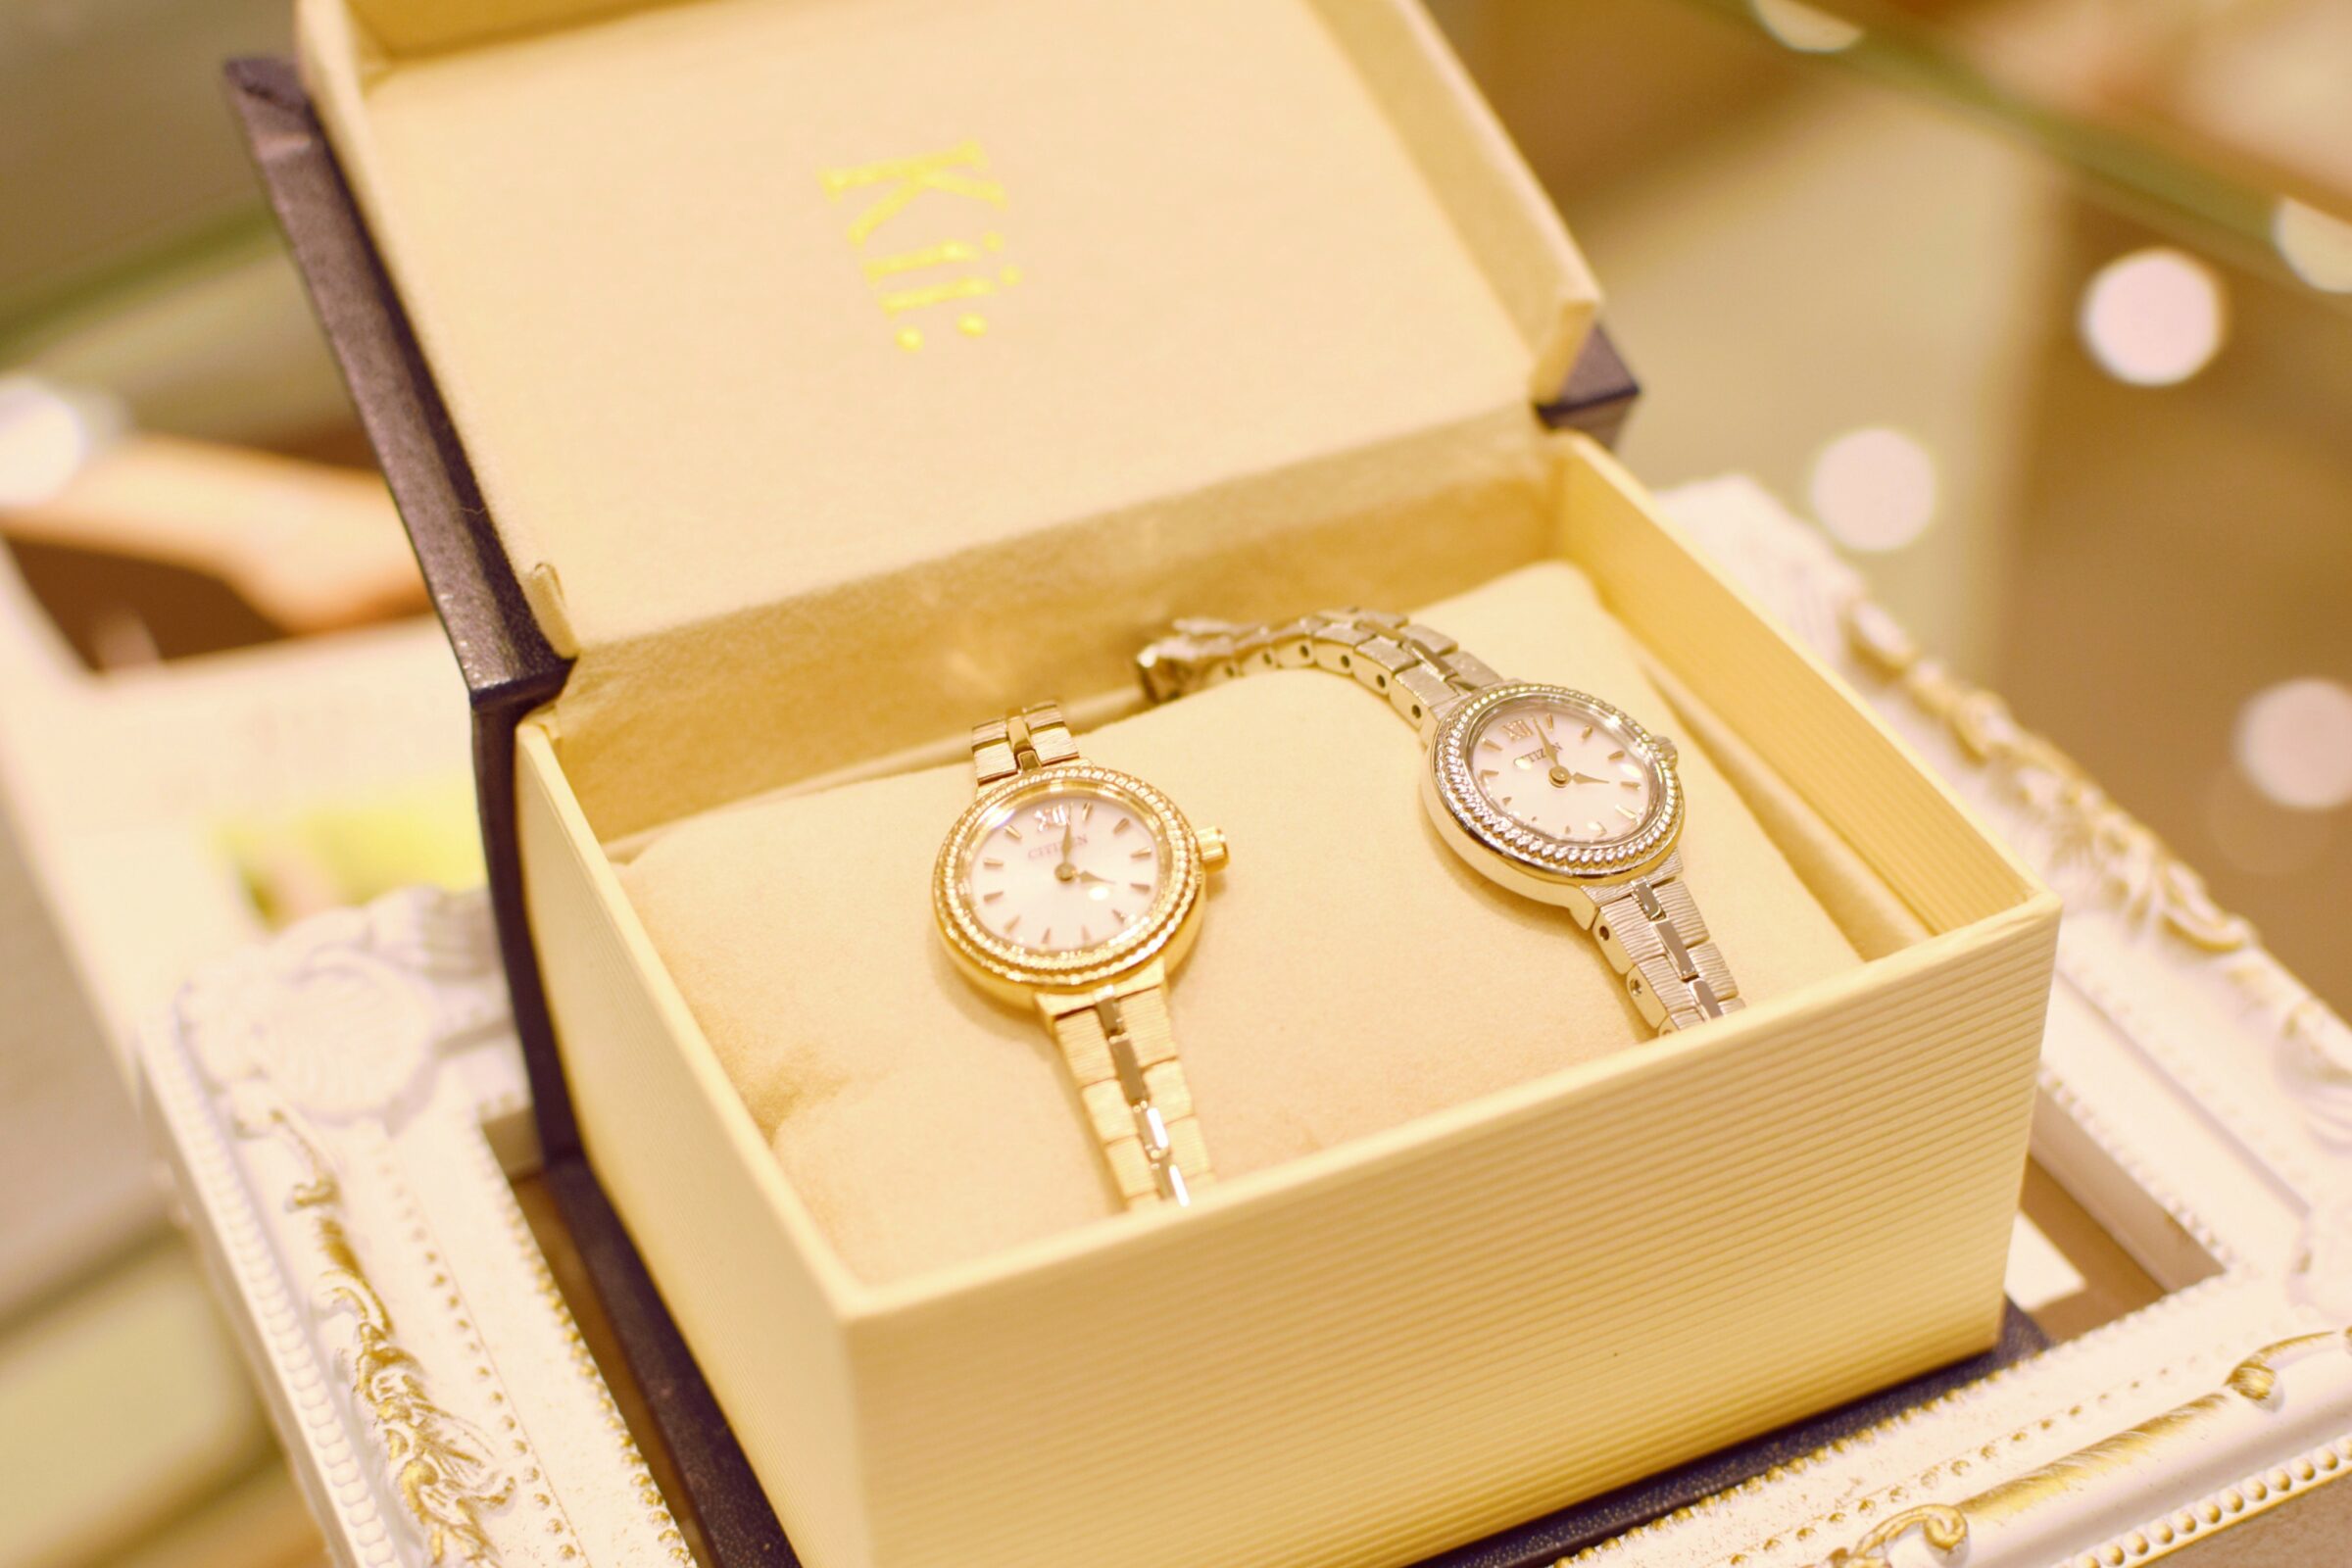 アンティークな腕時計『CITIZEN Kii:』 ✨move COCOSA熊本店✨ ontime